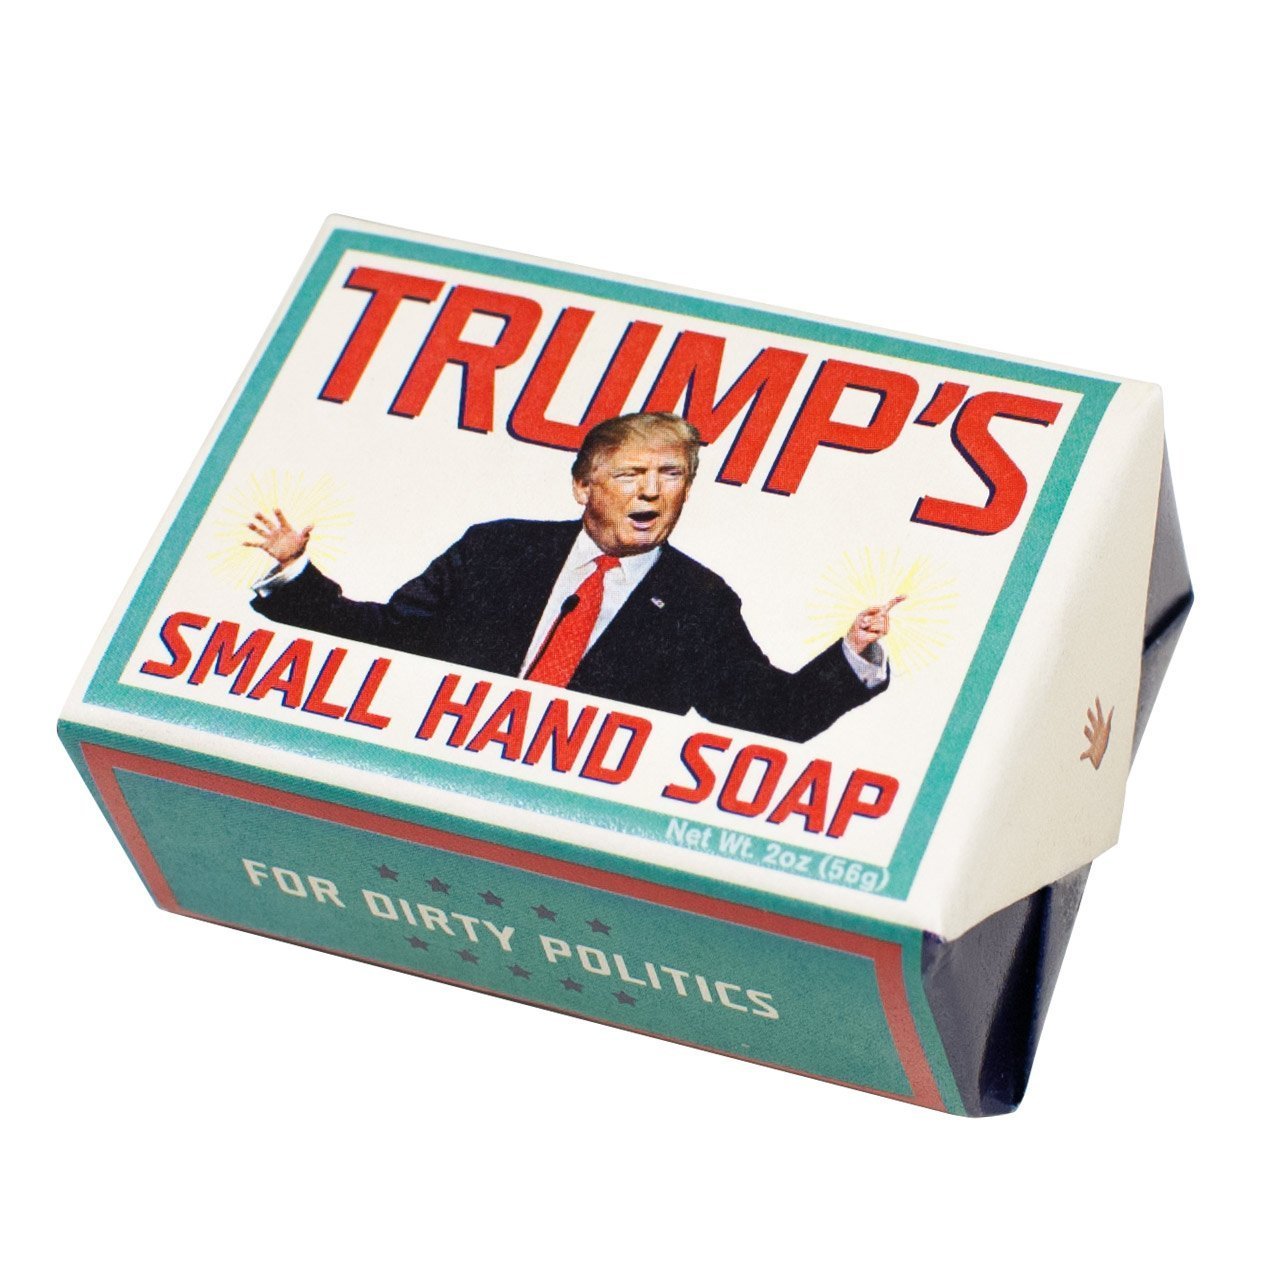 Trump’s Small Hand Soap